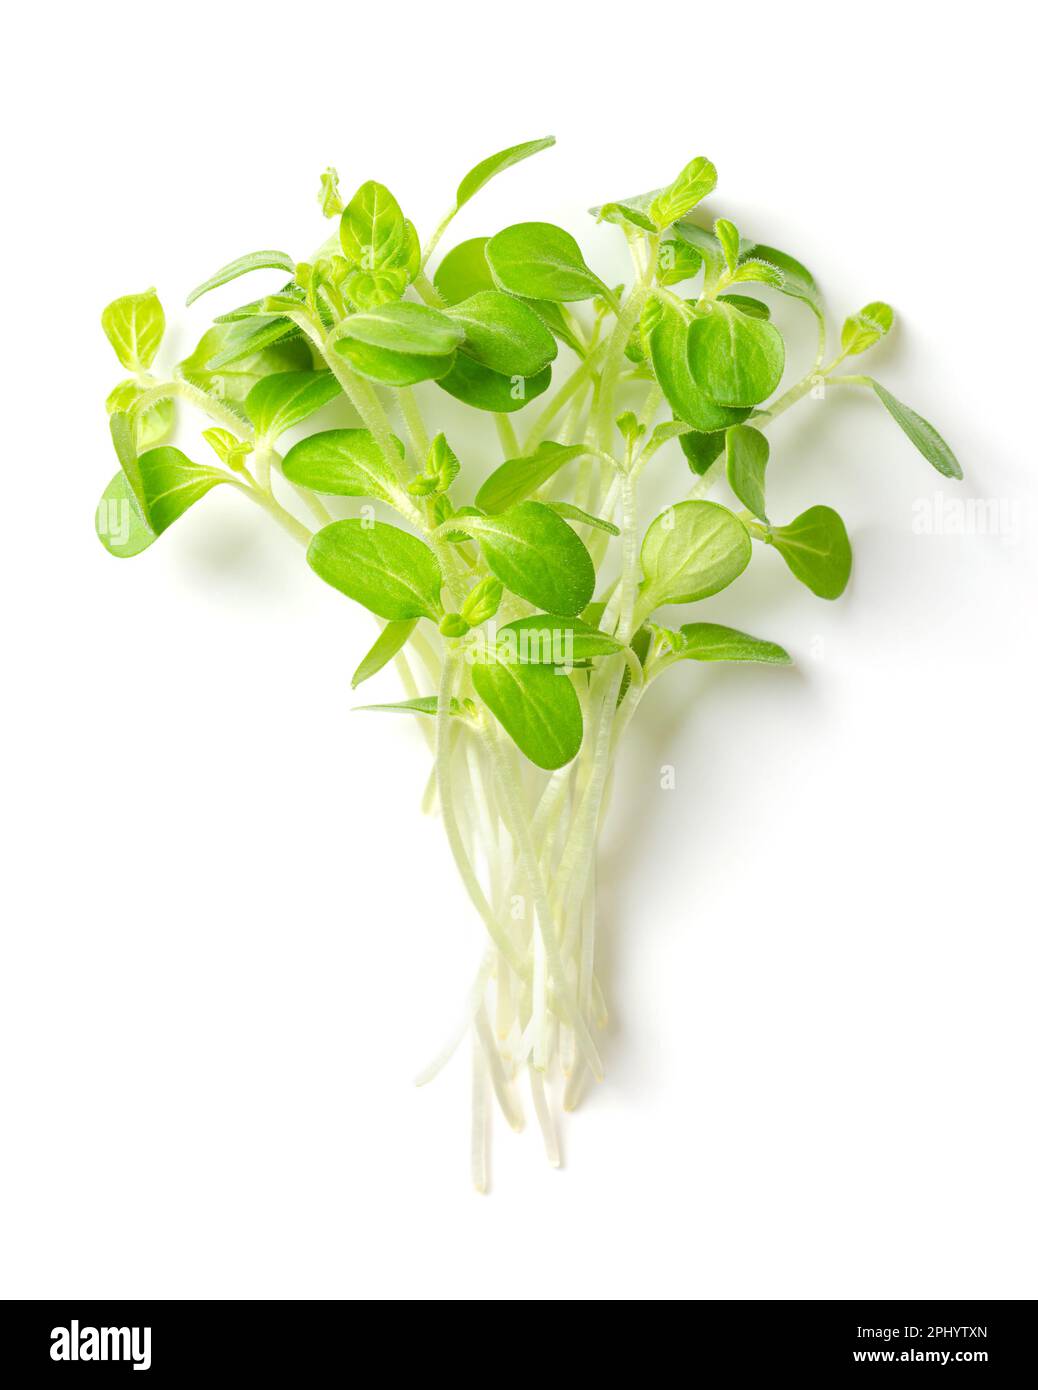 Ein Haufen Sesam-Mikrogreens von oben. Verzehrfertige, frische, grüne, junge Sesampflanzen, auch bekannt als Bene. Setzlinge und Kohlköpfe. Stockfoto